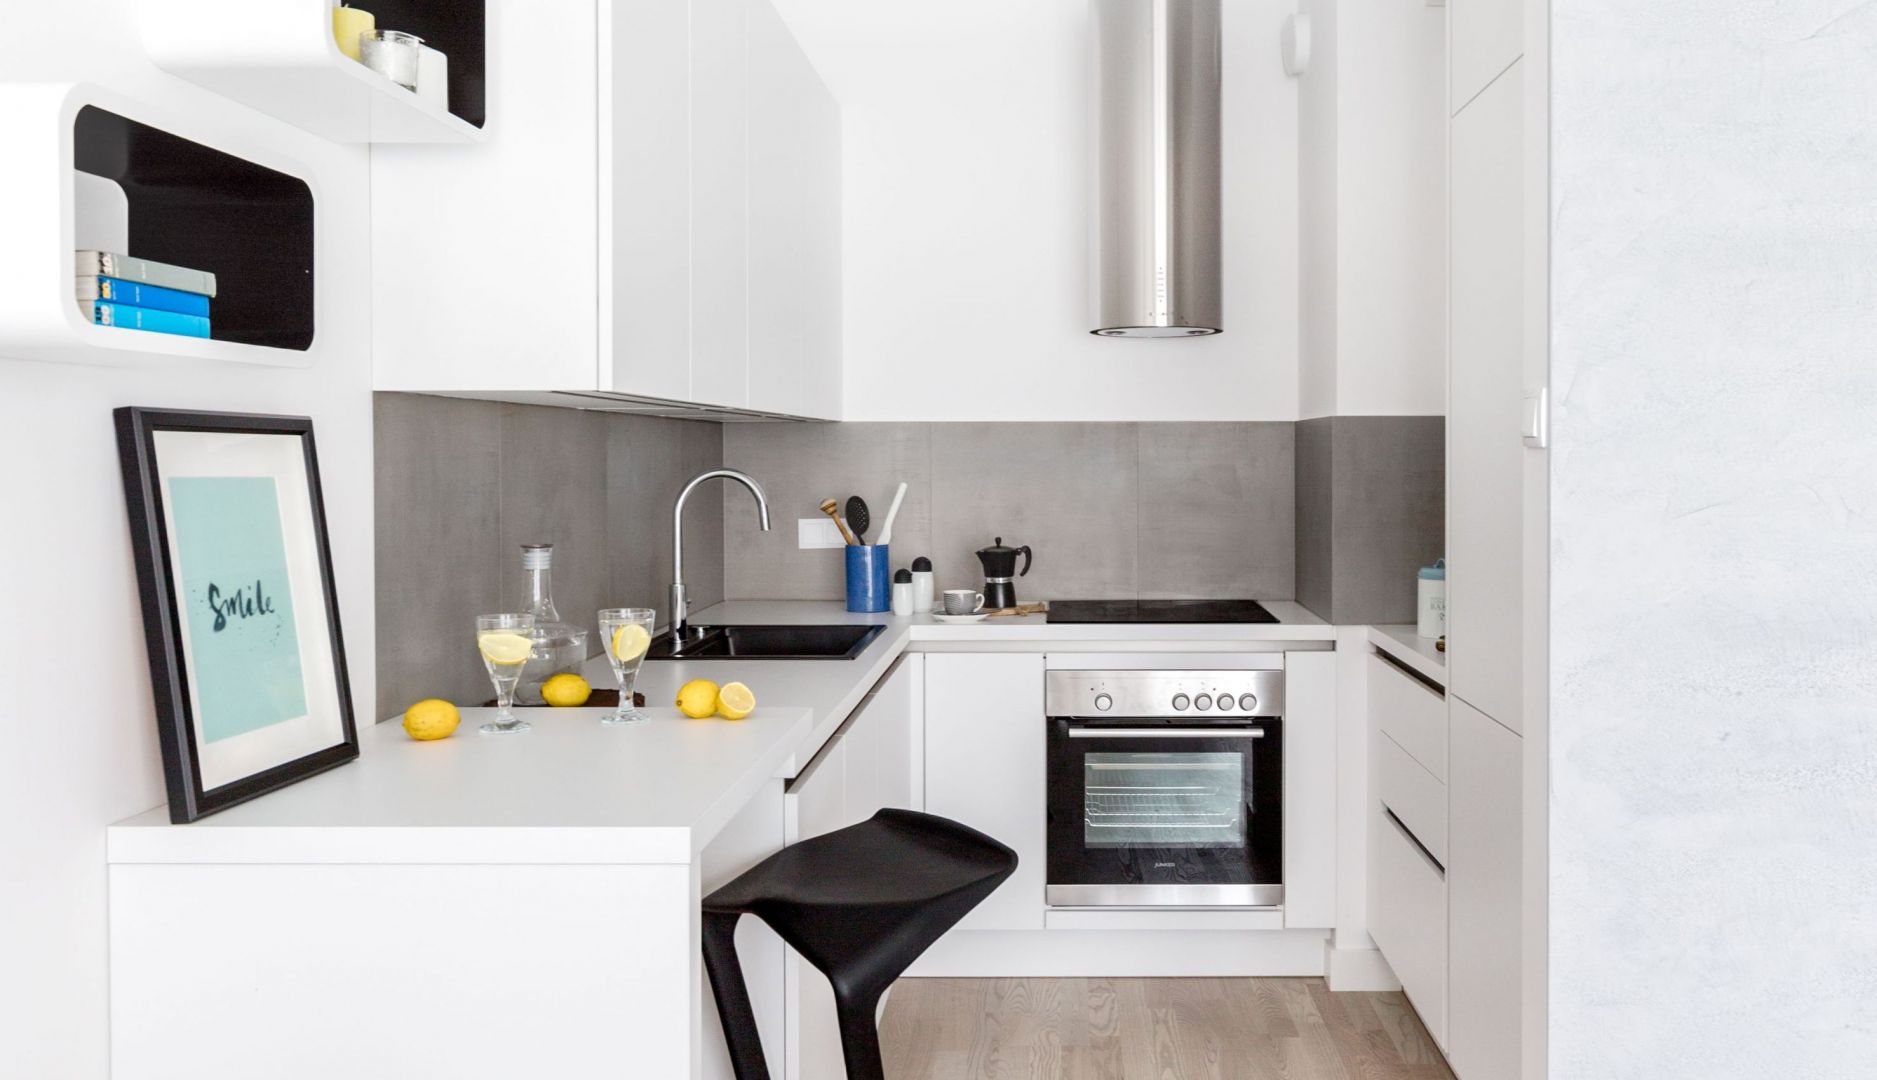 Biała kuchnia w małych wnętrzach. 12 pięknych zdjęć. Projekt Decoroom